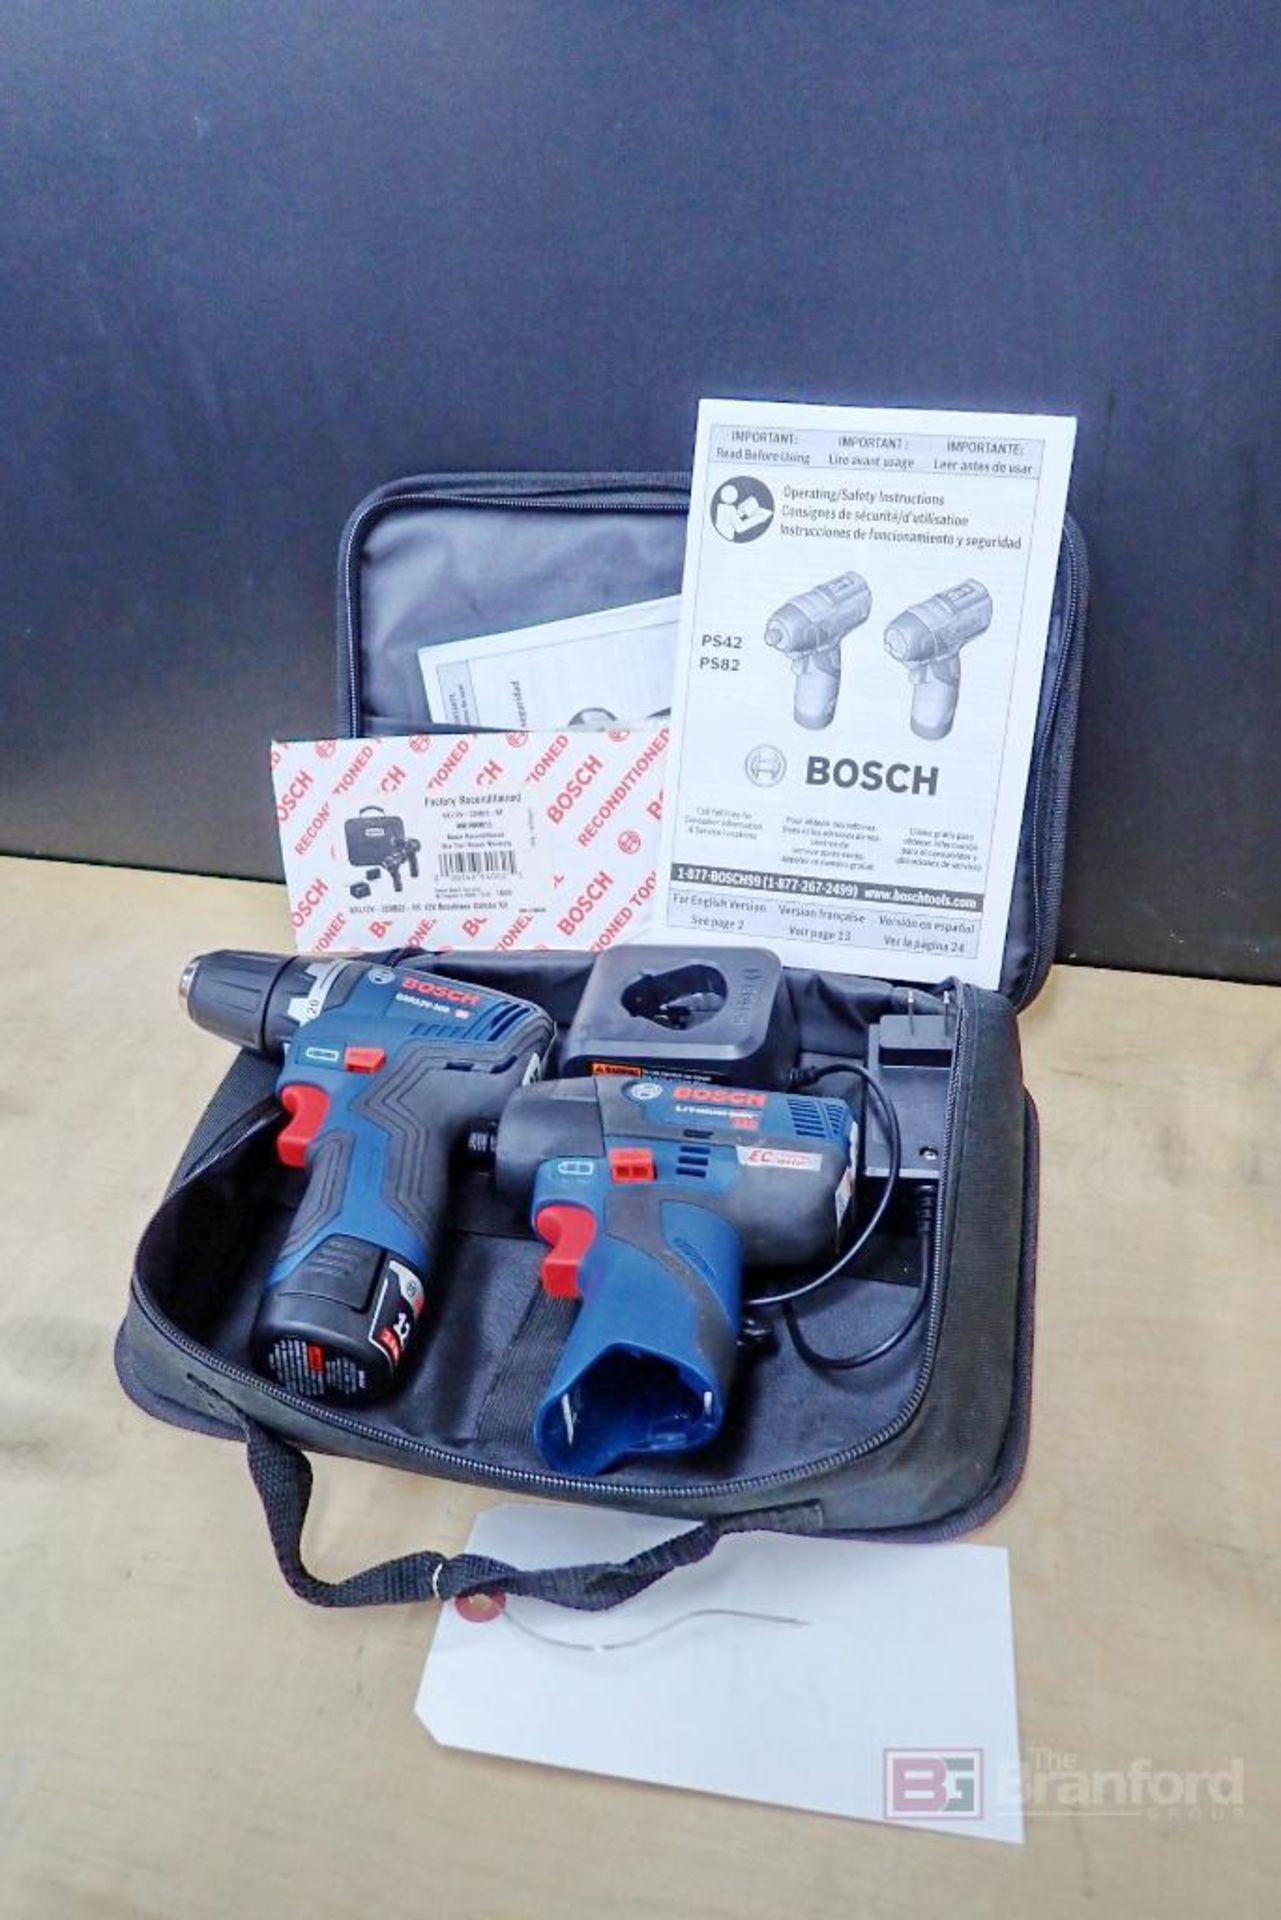 Bosch GXL12V-220B22-RT Brushless Combo Kit w/ Driller - Driver - Image 8 of 8